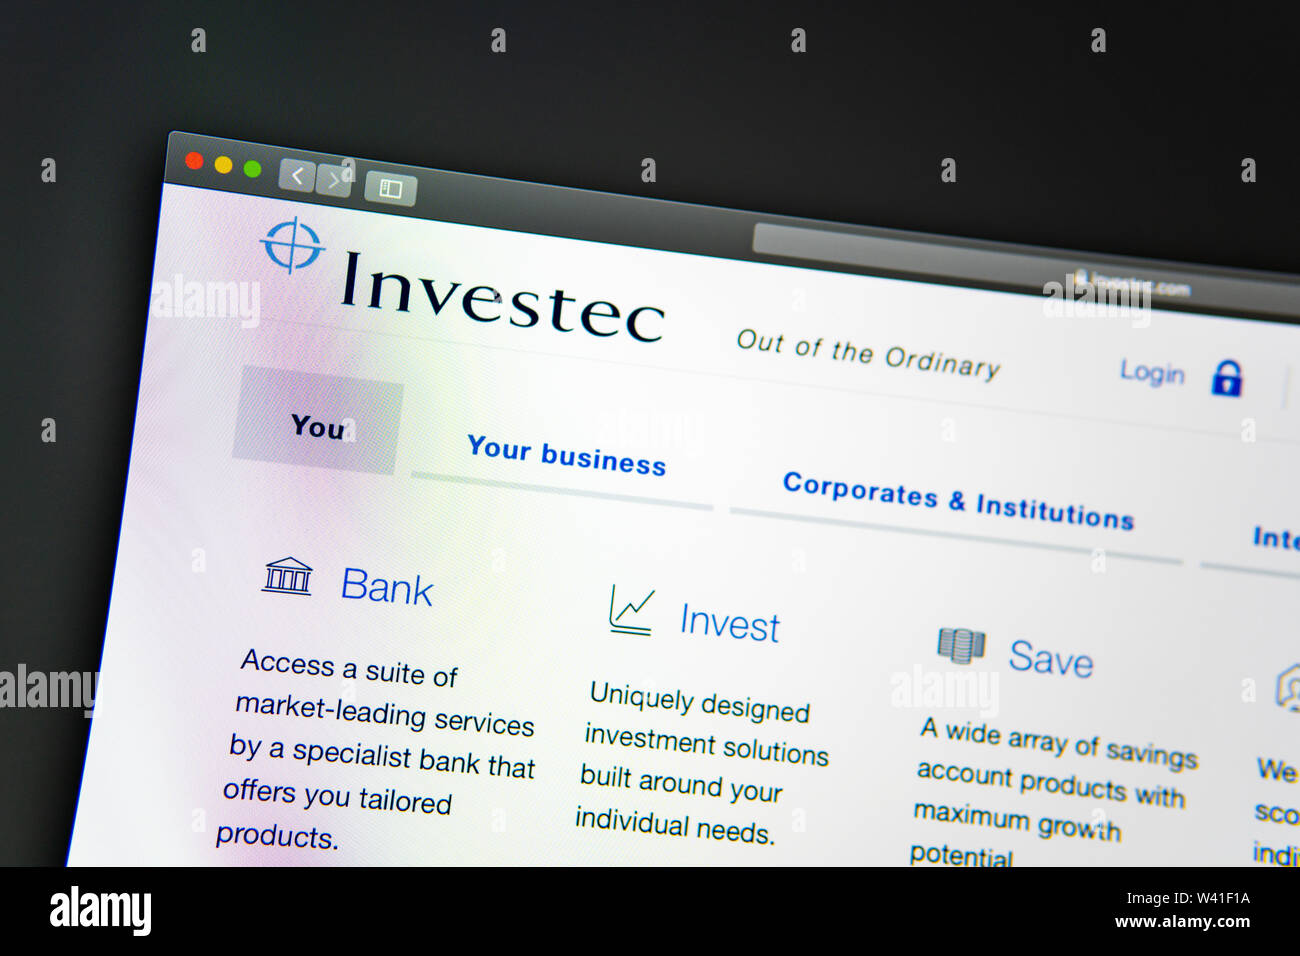 Investec Startseite. Nahaufnahme von Investec Logo. Kann als illustrative für Medien, Marketing oder Business Konzept verwendet werden. Stockfoto